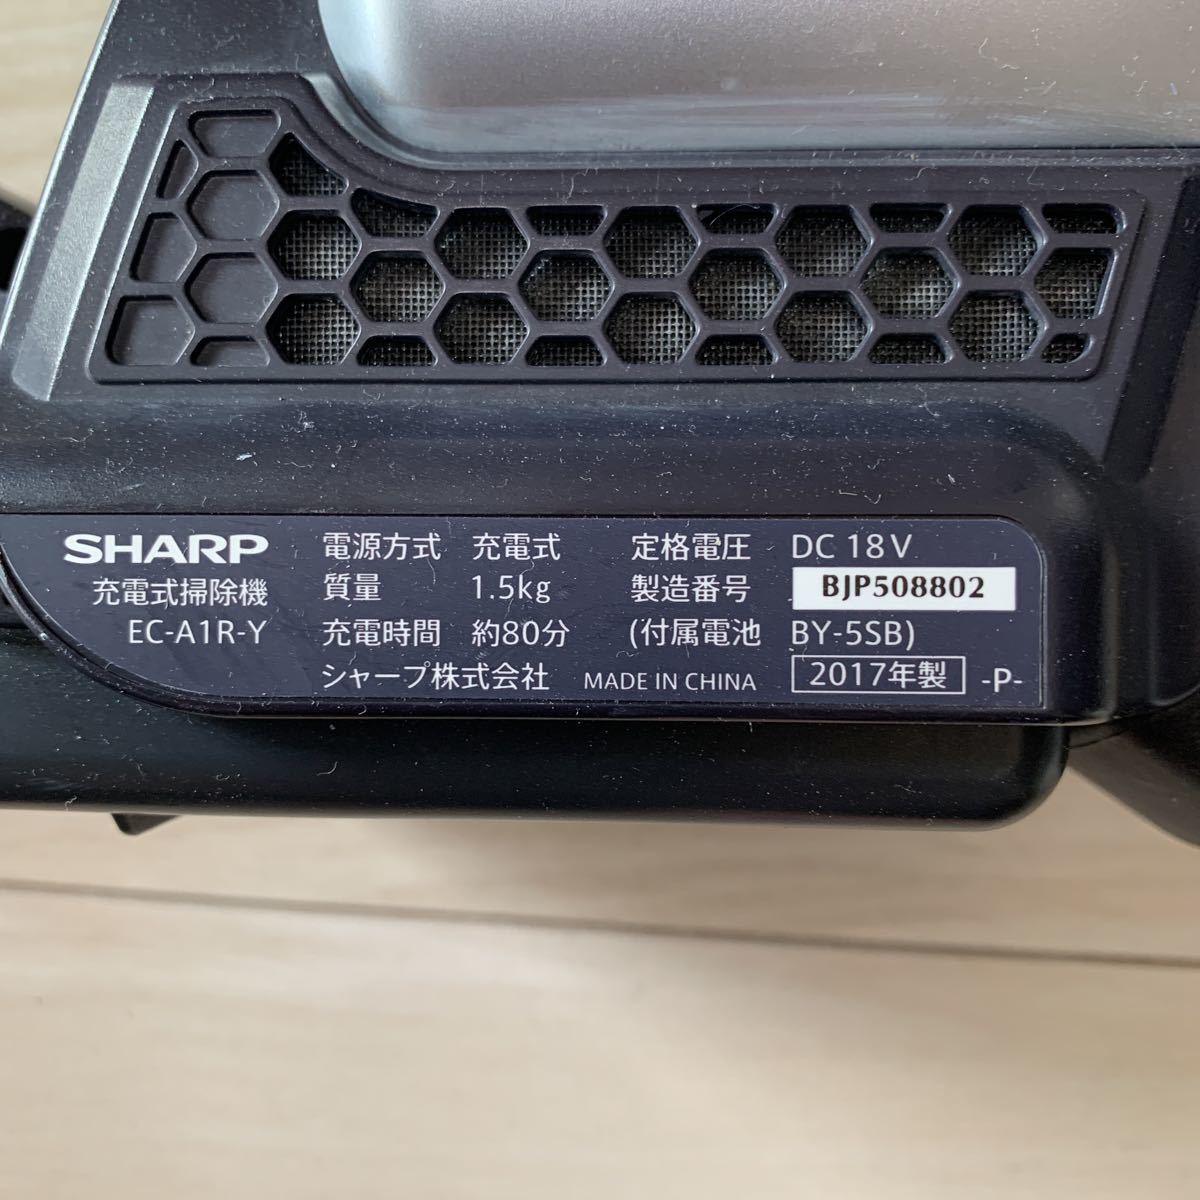 SHARP EC-A1R-Y コードレスクリーナー サイクロン 中古品 美品 動作品